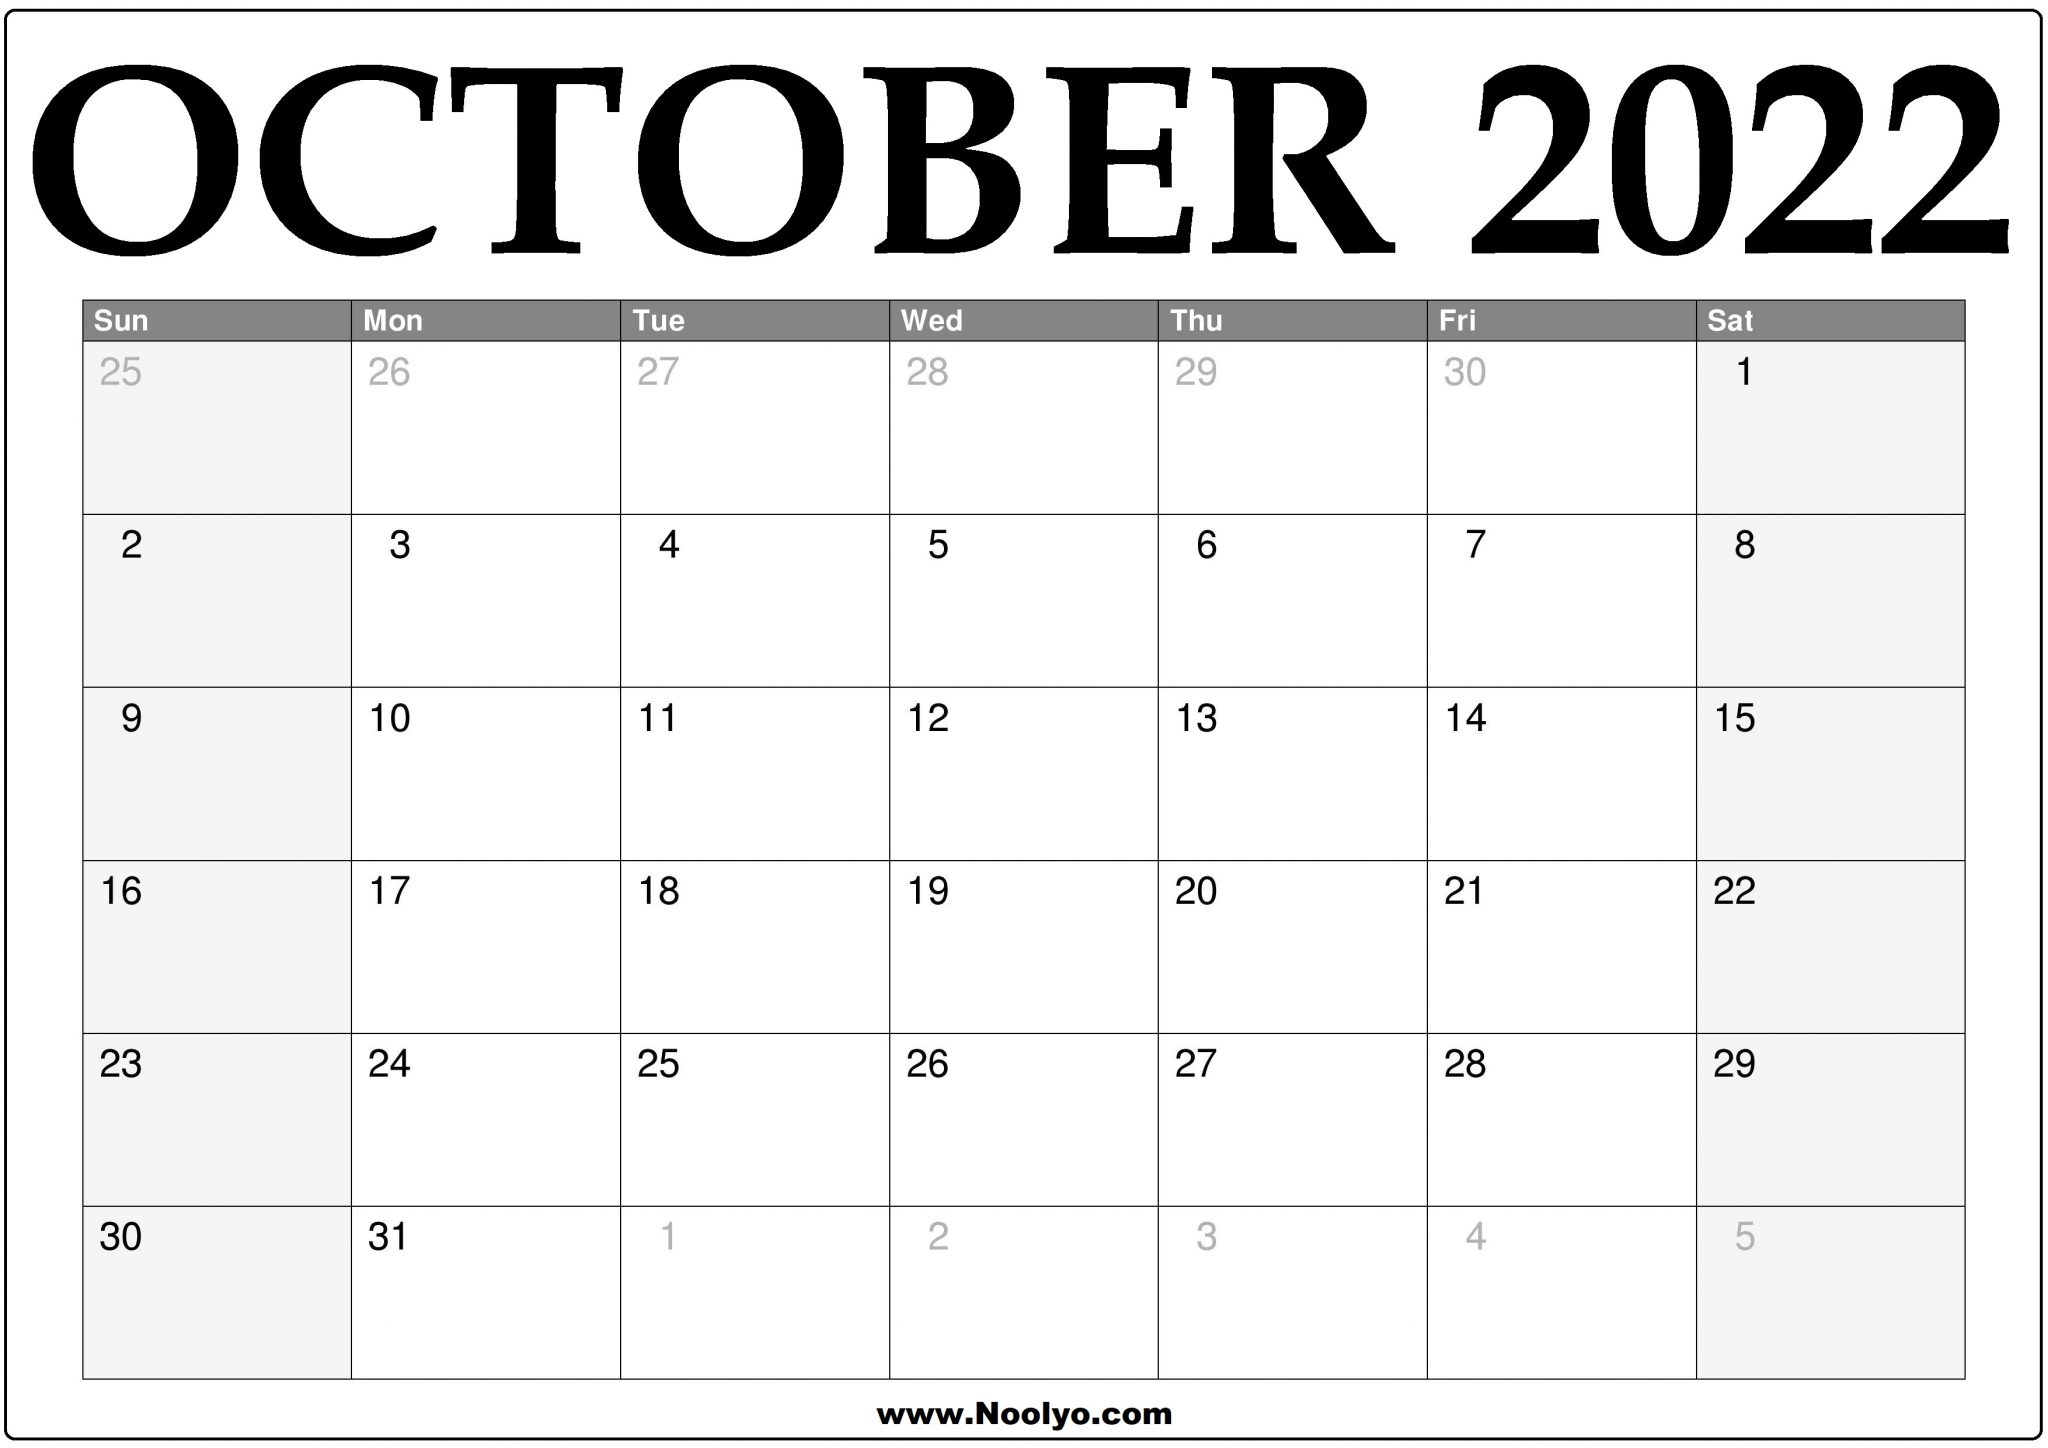 october-2022-free-monthly-calendar-gambaran